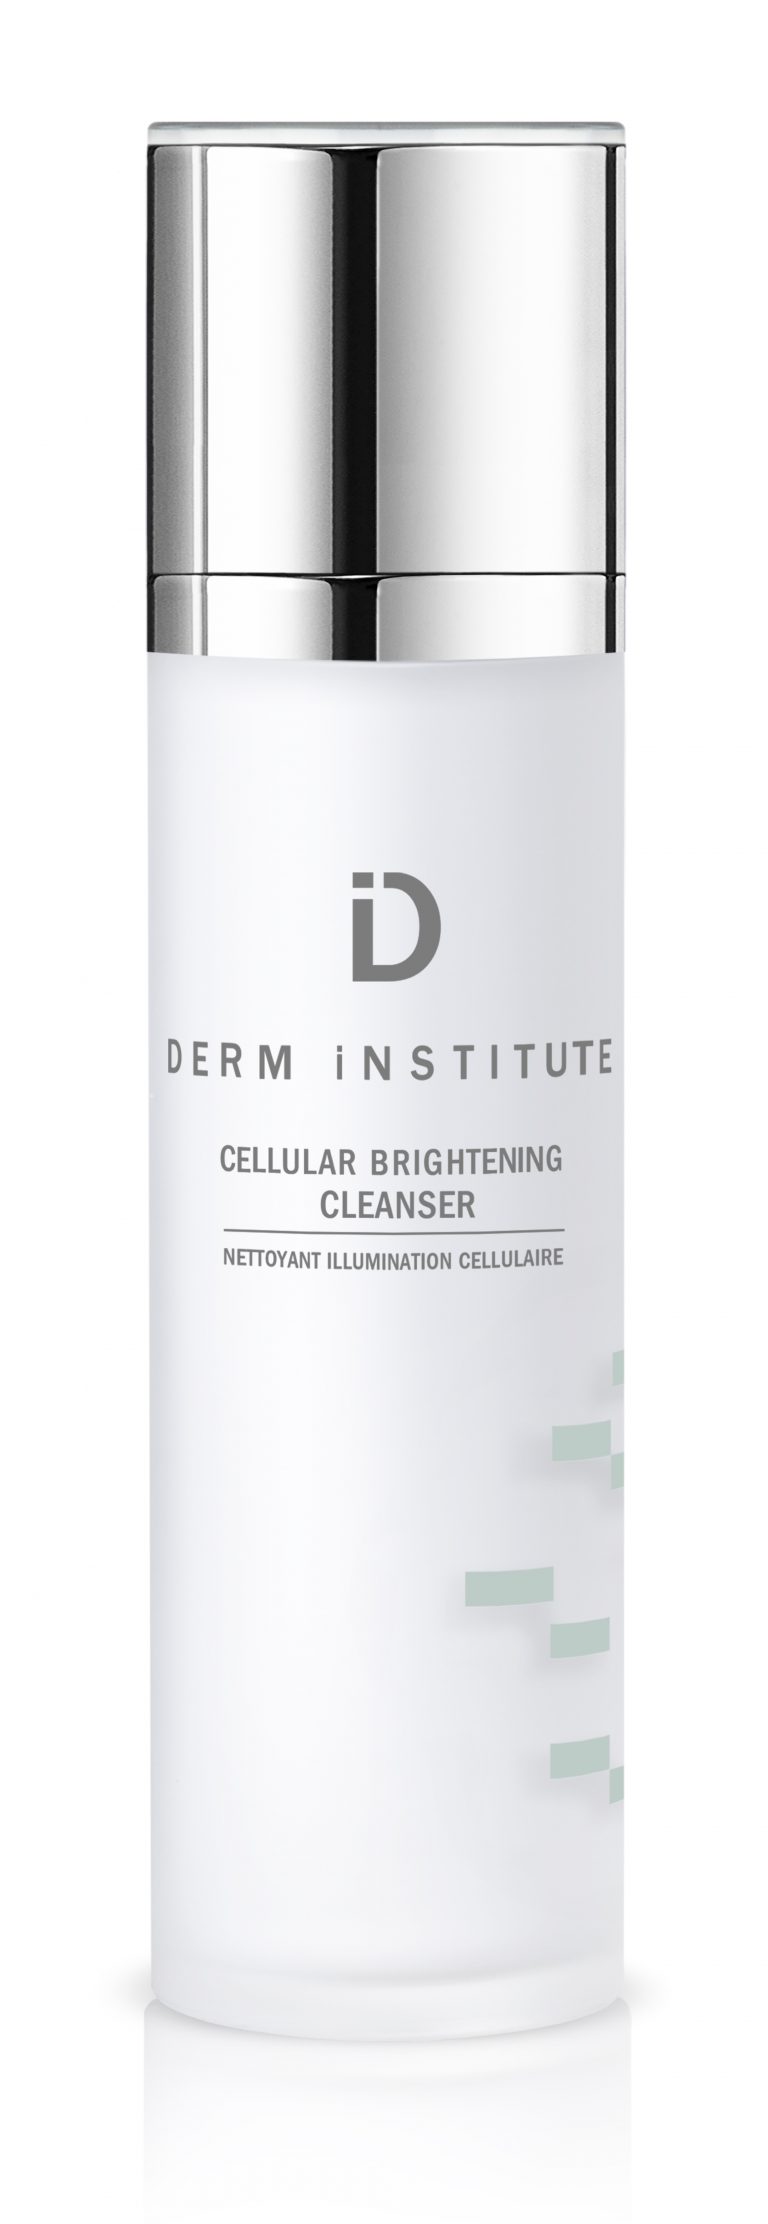 Derm Institute 基因美白注氧煥顏洗面乳 $600/120ml：以天然胺基酸粉末為潔面基底，弱酸性酵素特質，可以深層按摩毛孔及清潔臉部的污垢，改善肌膚因循環不佳而導致的暗沉。添加維他命B3、B5、B6 能修護敏感肌膚，增強屏障防禦能力。